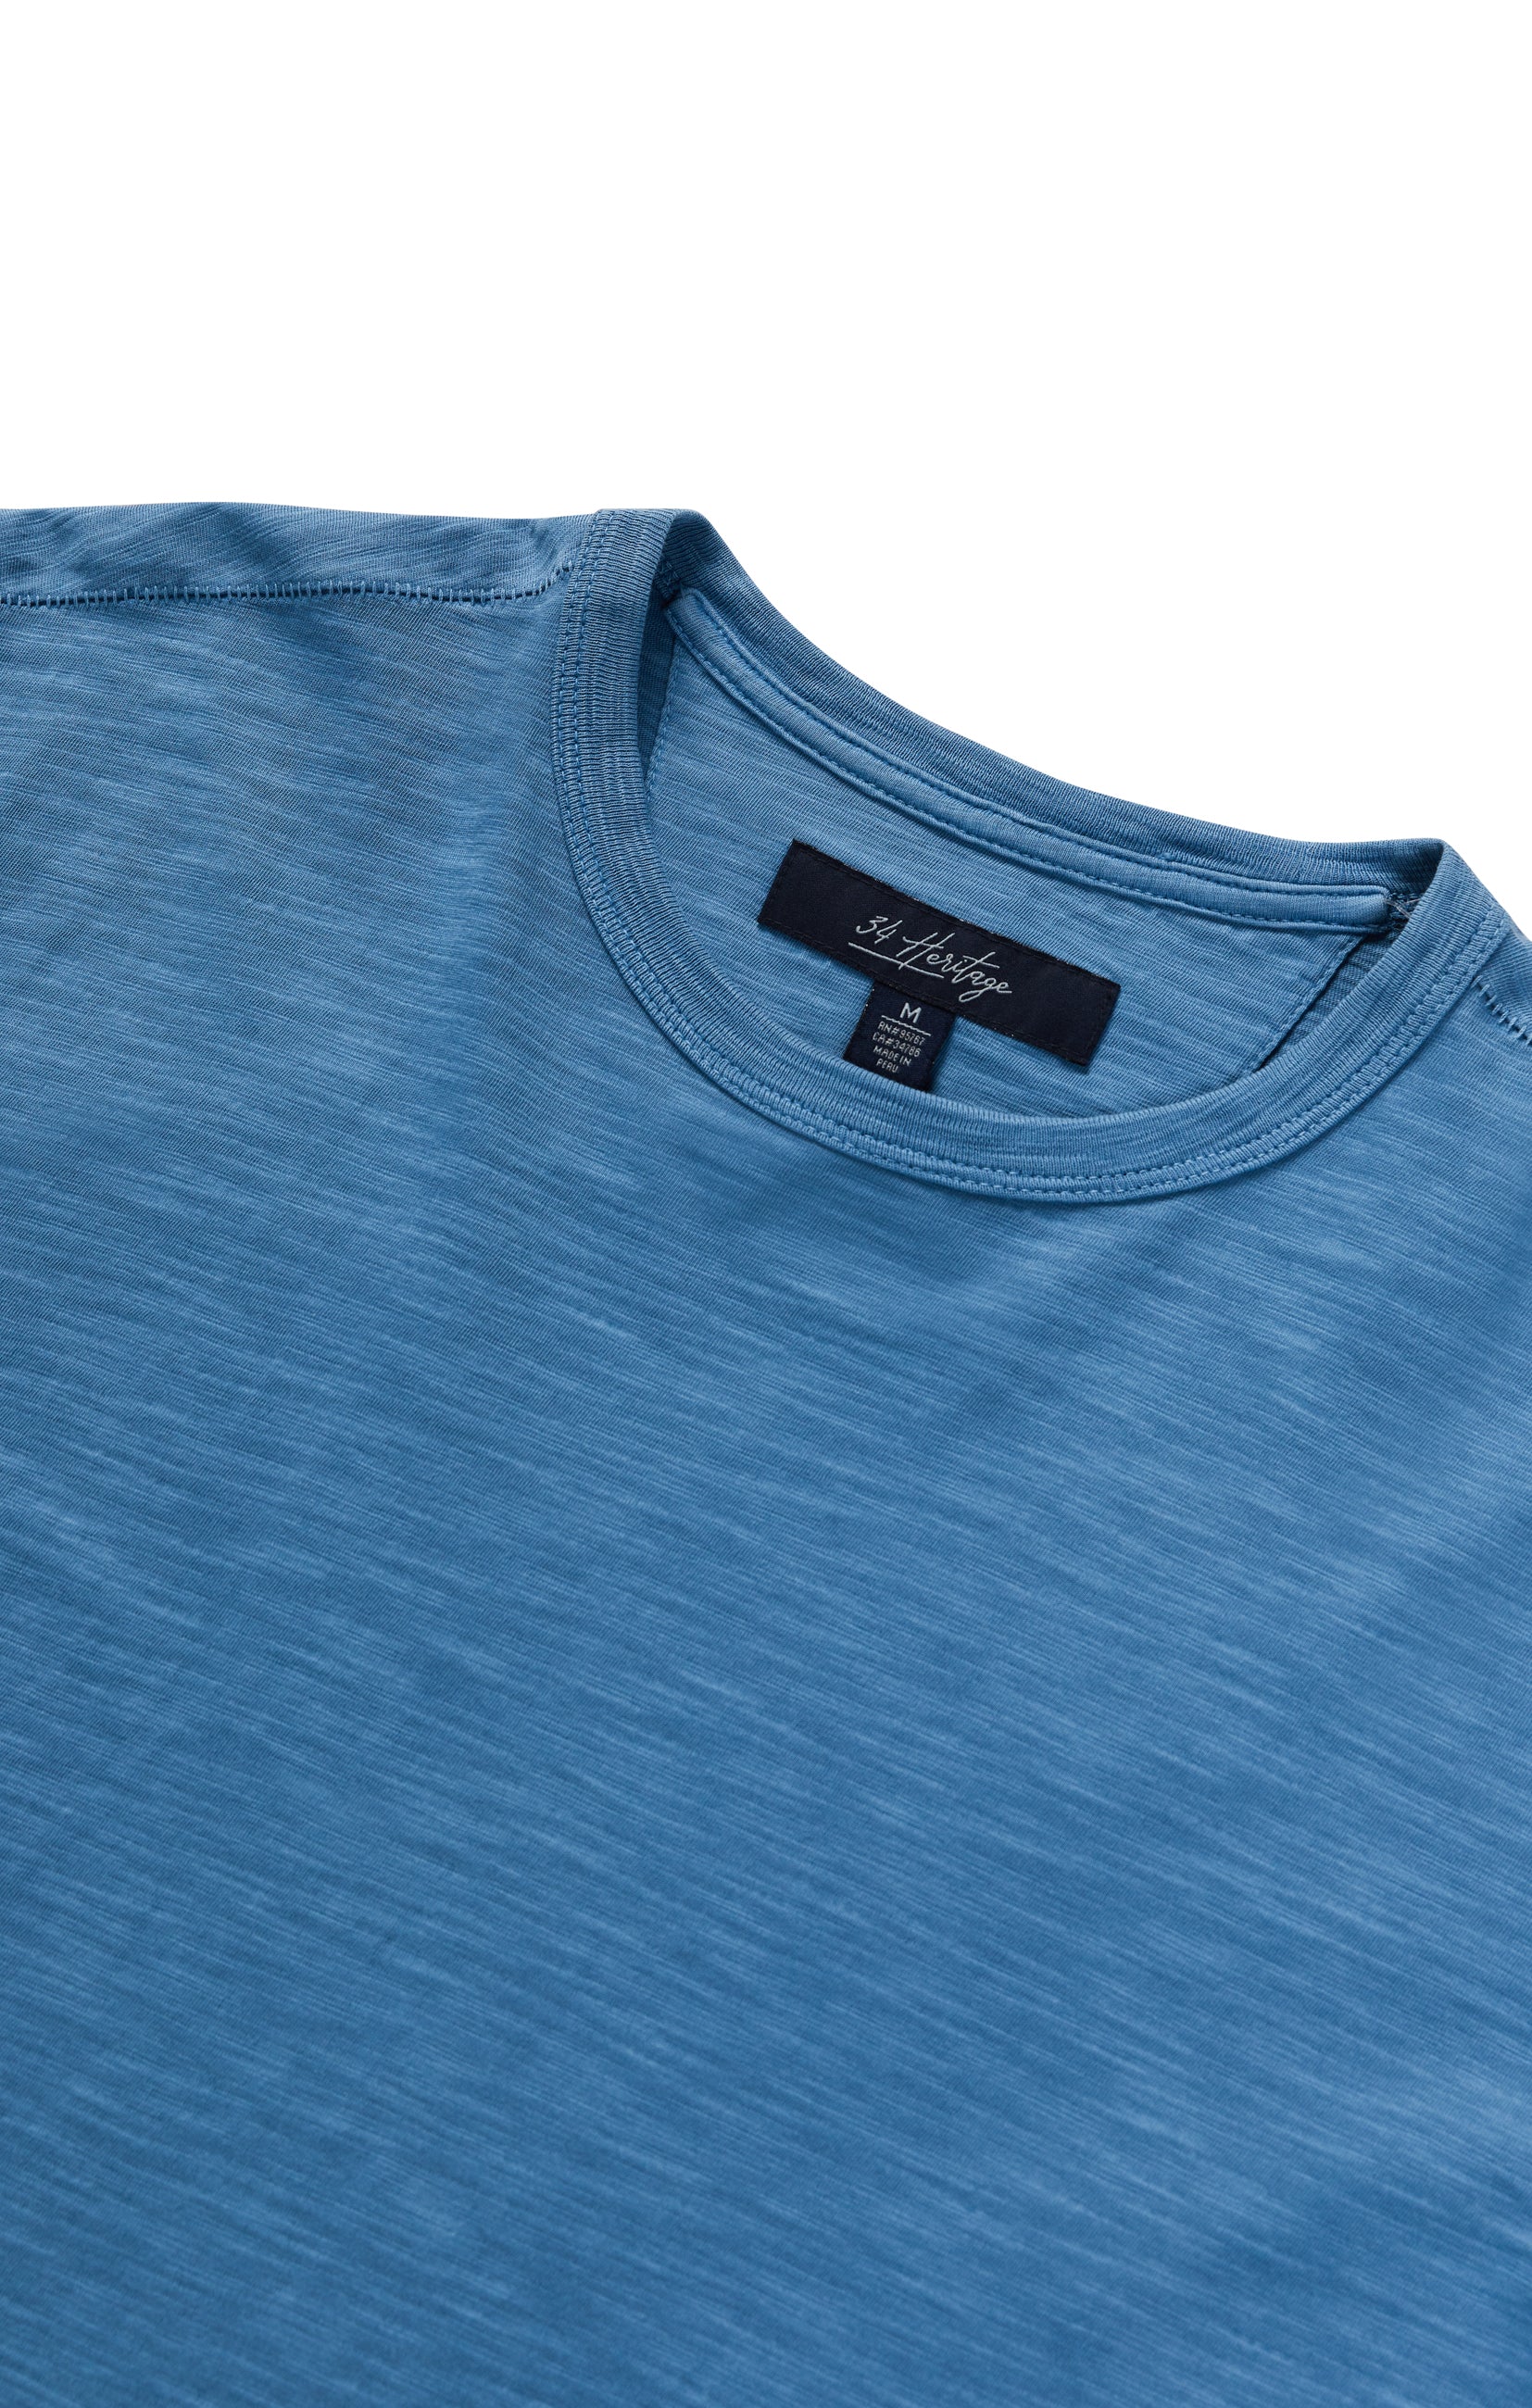 Slub Crew Neck T-Shirt in Vallarta Blue Image 10